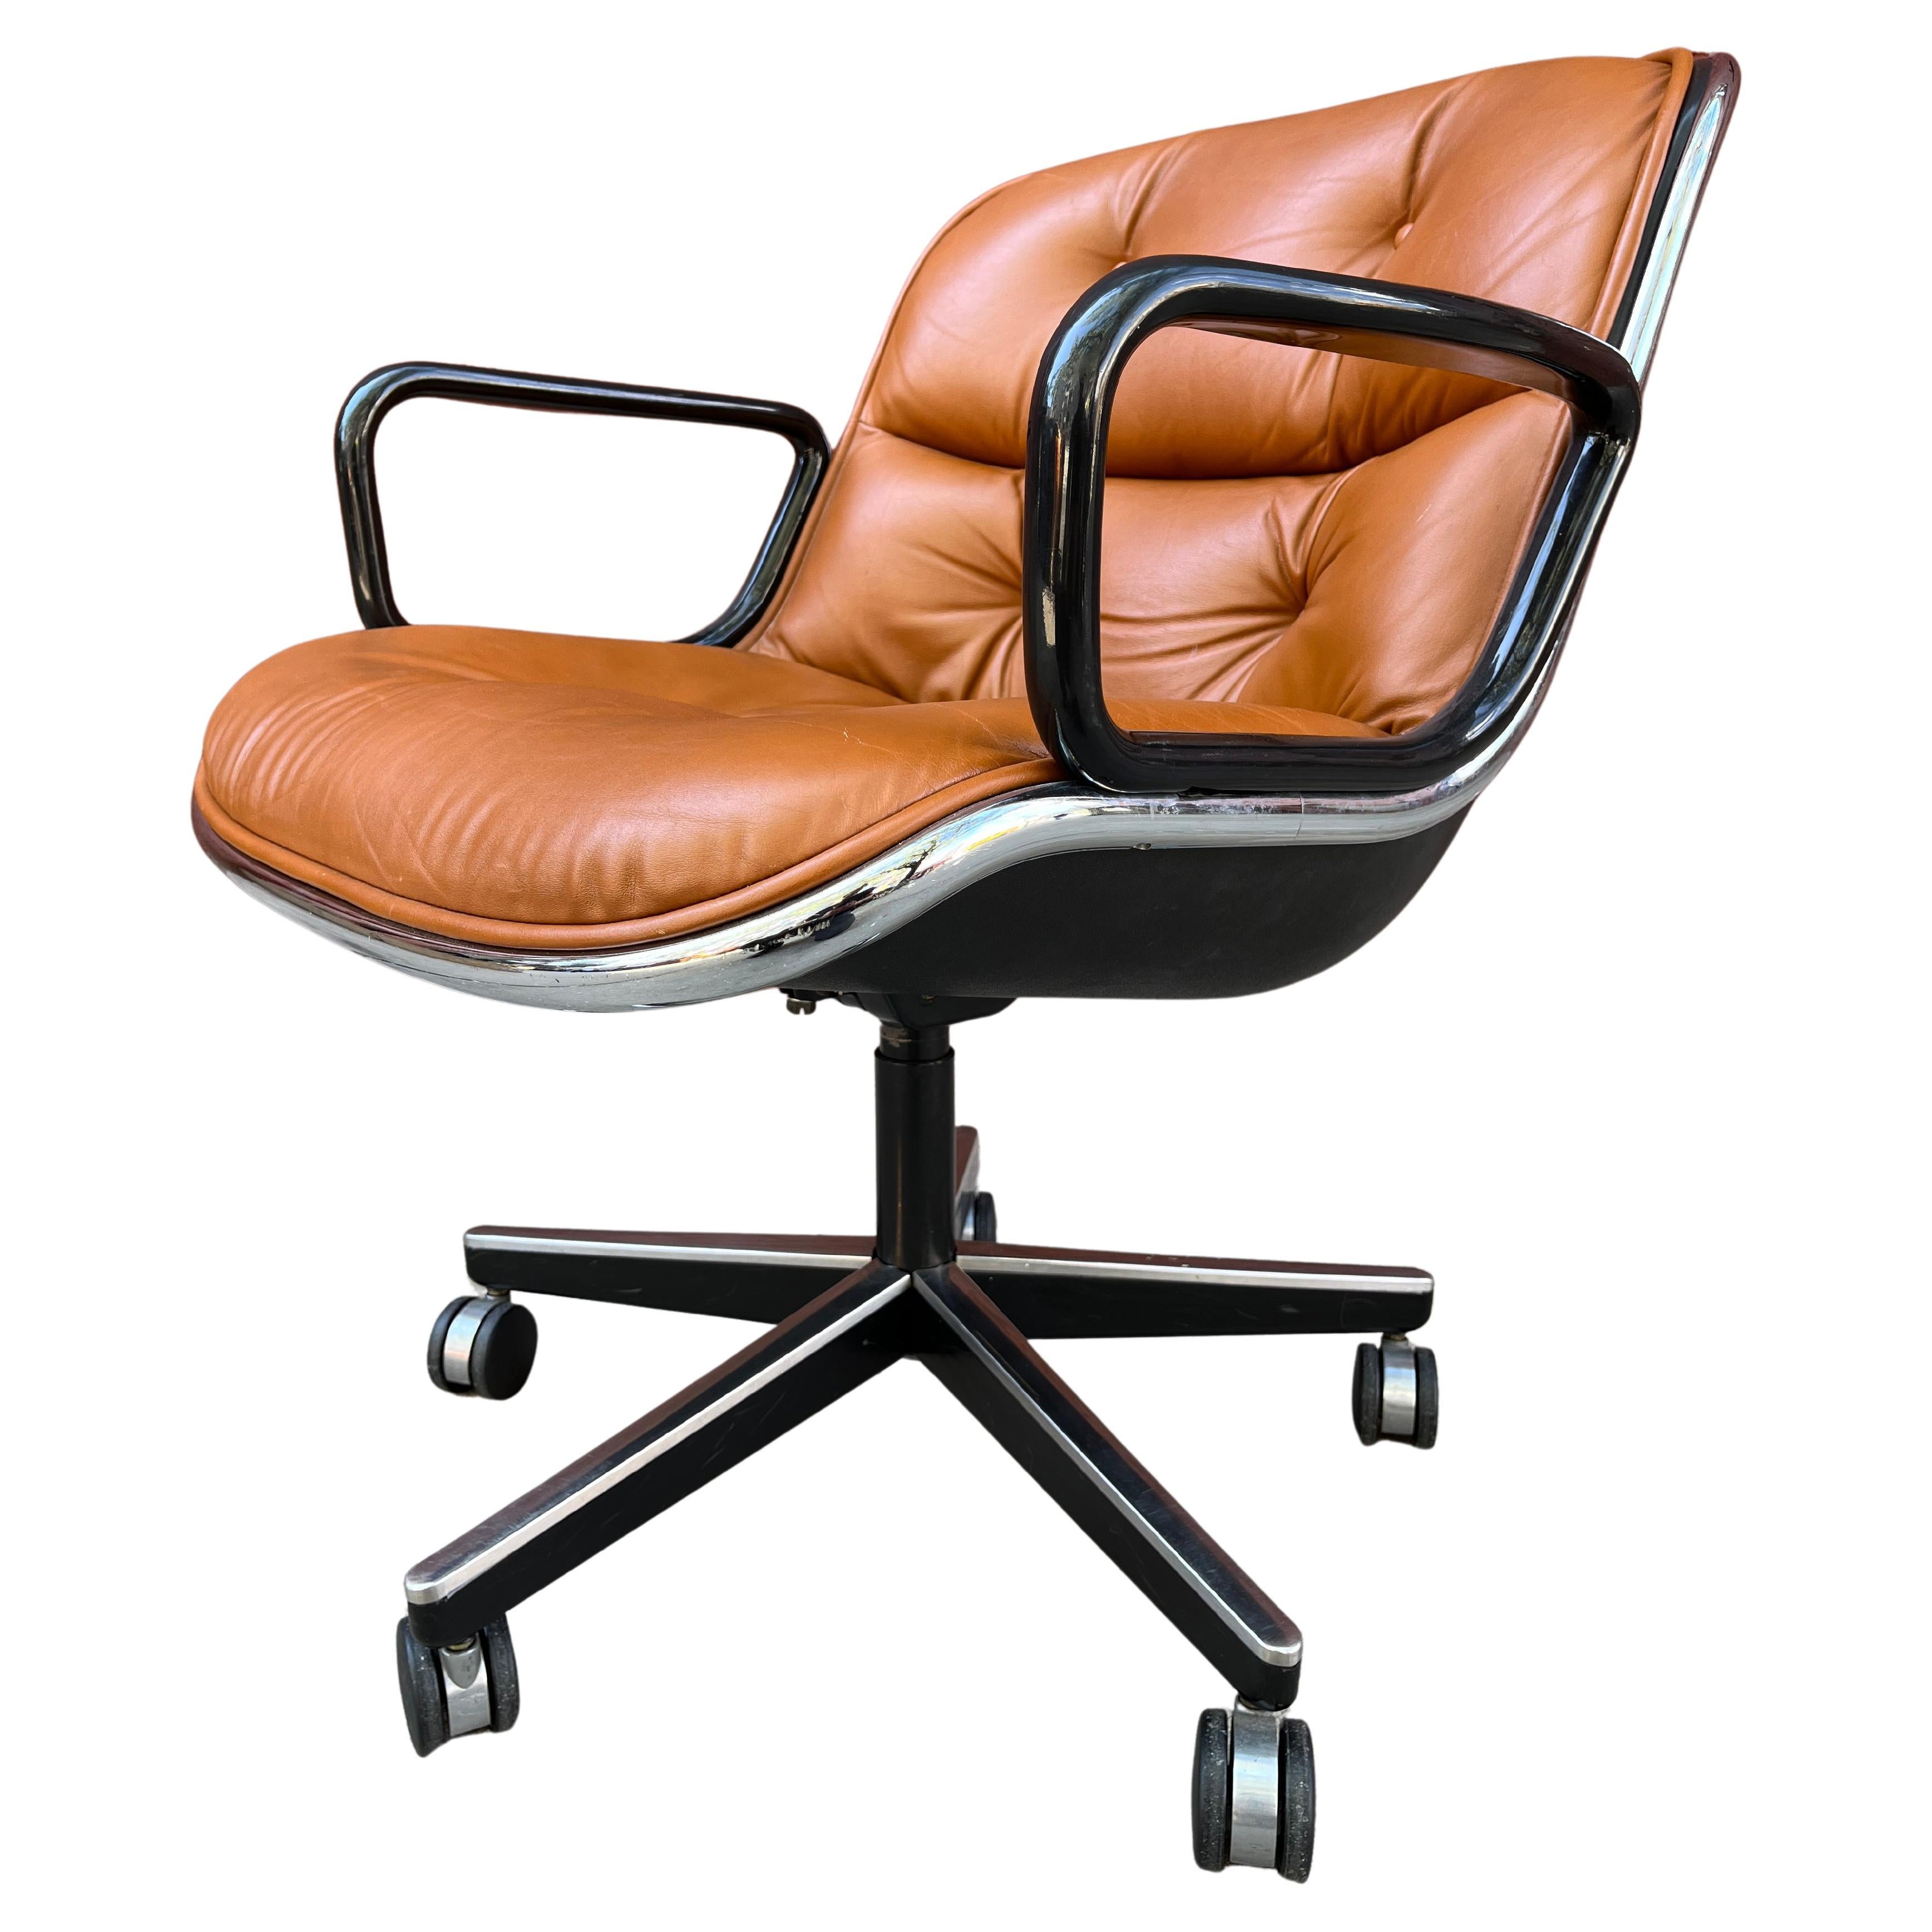 Chaise de bureau Charles Pollock pour Knoll avec revêtement en cuir brun. Lorsque vous pensez à la chaise Pollock parfaite, celle-ci vous vient probablement à l'esprit. Ce fauteuil de bureau de direction est une icône du design moderne du milieu du